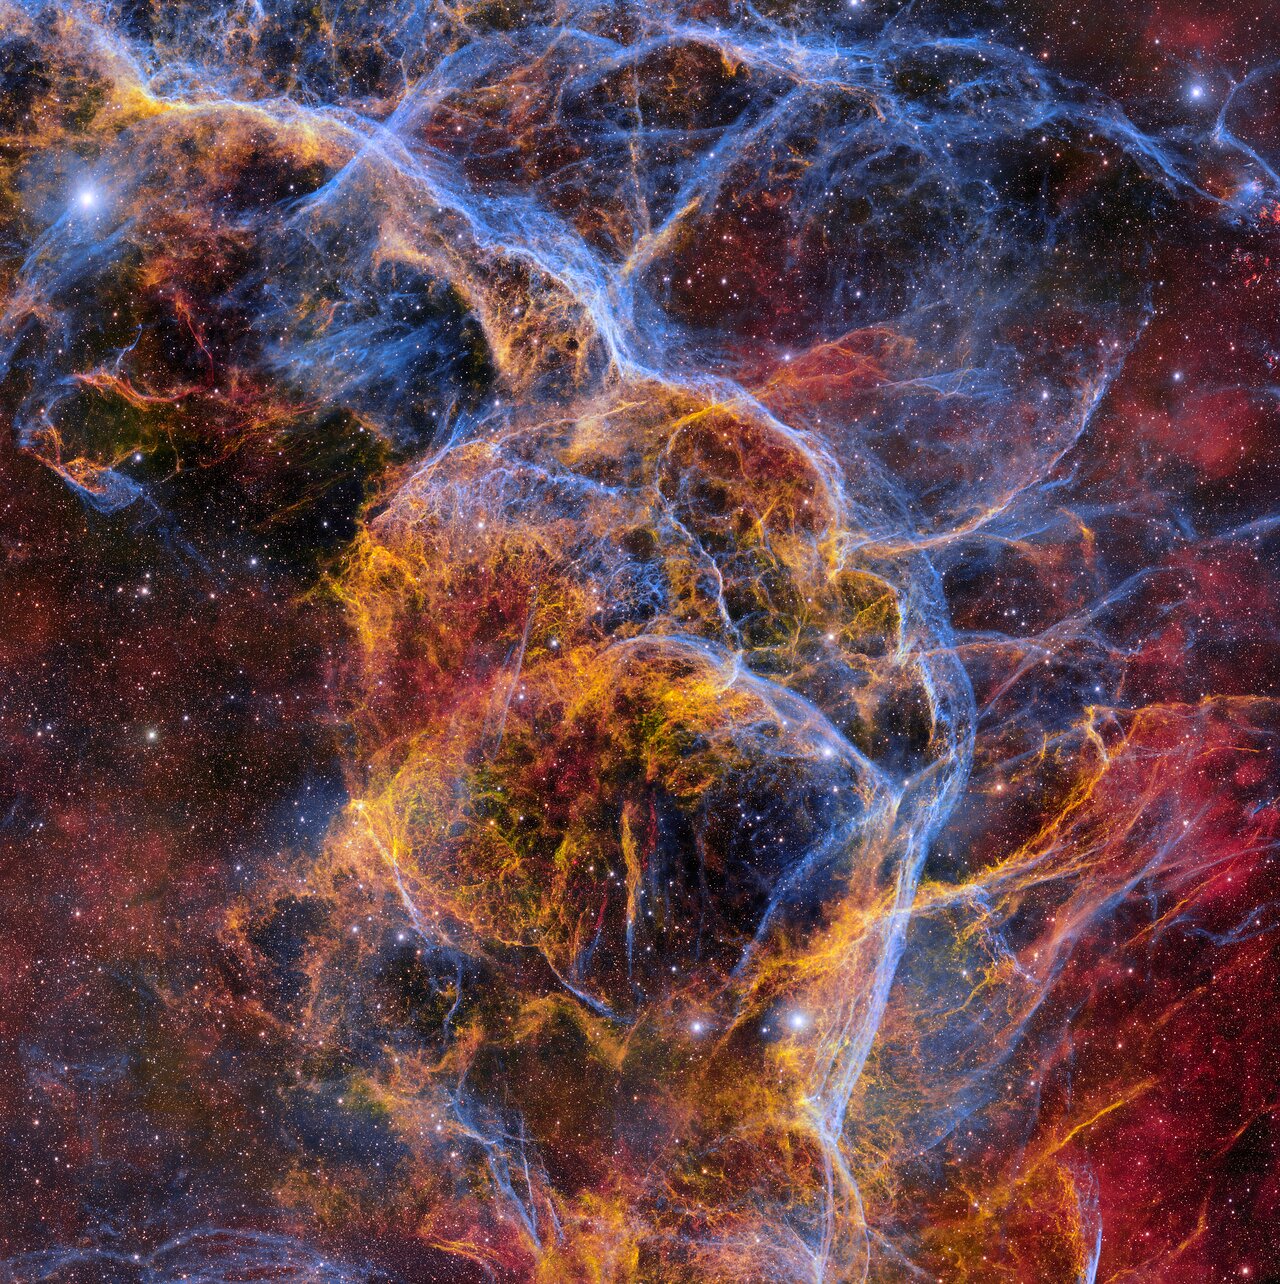 Ova šarena mreža nježnih plinskih filamenata predstavlja ostatak Vele supernove, šireću maglicu kozmičkog otpada koja je ostala nakon eksplozije masivne zvijezde prije otprilike 11.000 godina. Fotografija je snimljena pomoću Kamere za tamnu energiju (DECam), koju je izradio Odjel za energiju, a koja je montirana na Teleskopu Víctora M. Blanca promjera 4 metra. Zasluge:
CTIO/NOIRLab/DOE/NSF/AURA
Obrada slike: T.A. Rector (Sveučilište u Aljasci Anchorage/NOIRLab NSF-a), M. Zamani & D. de Martin (NOIRLab NSF-a).